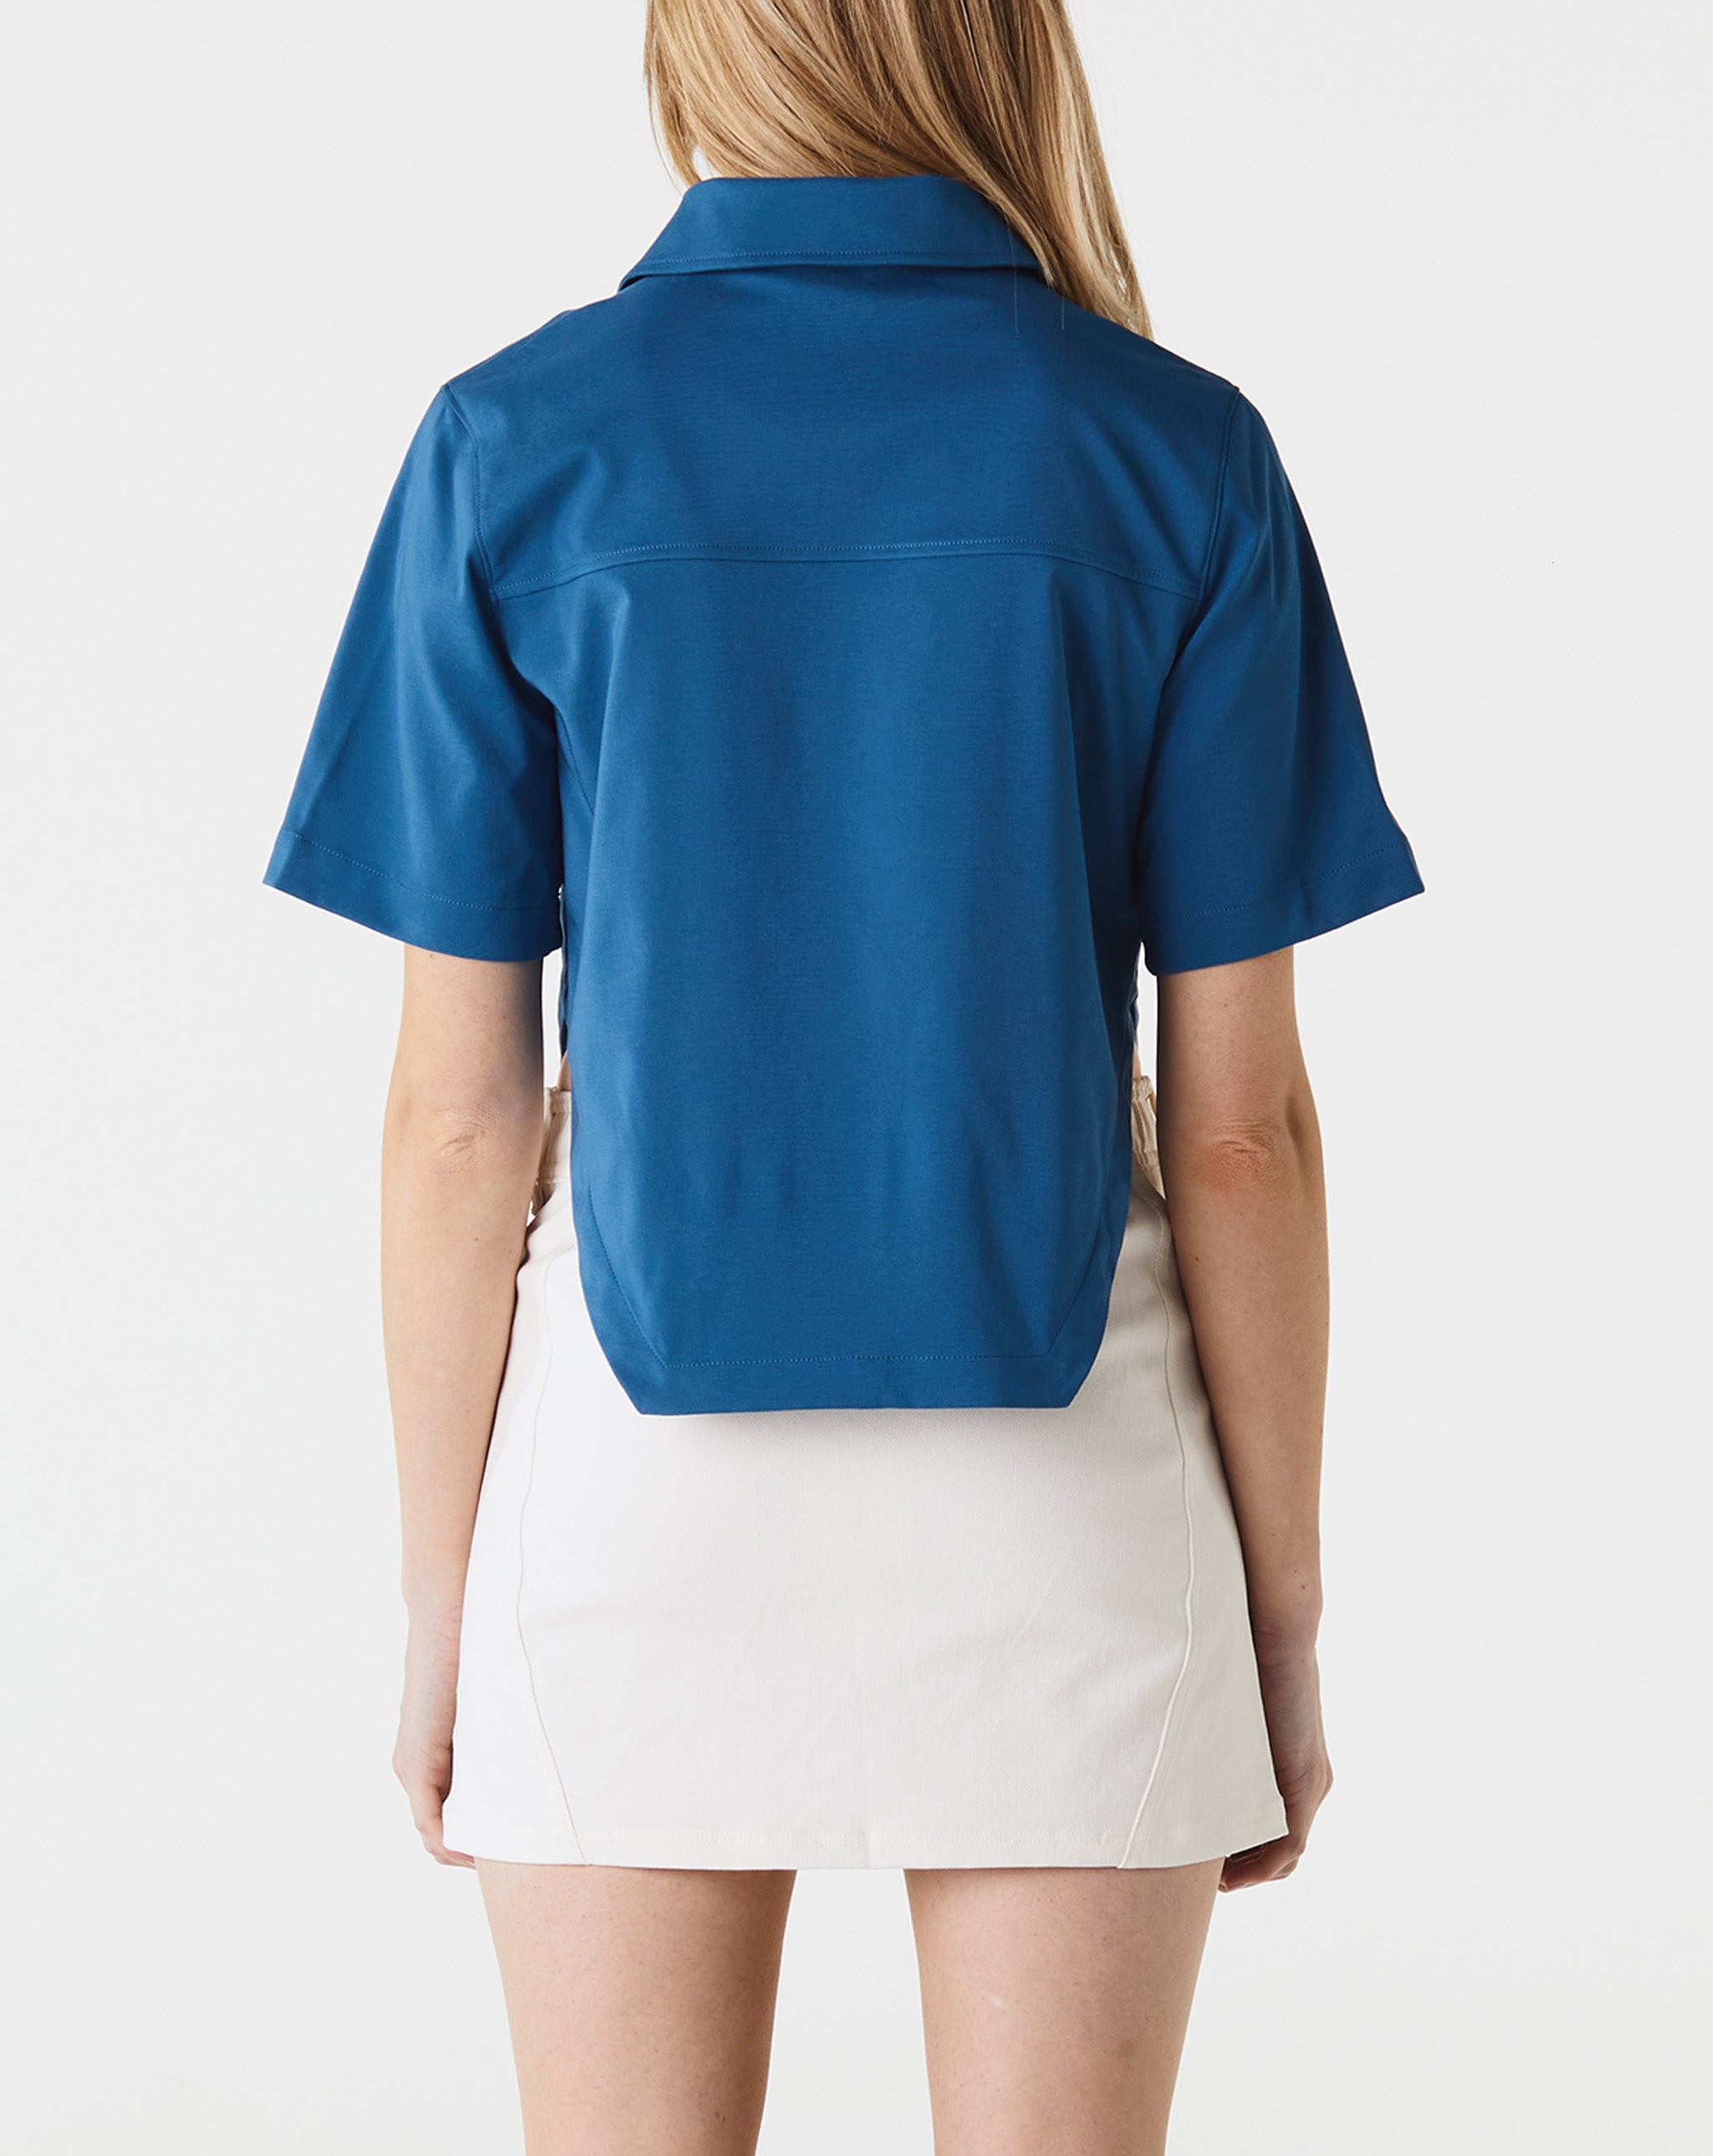 Air Jordan Women's Woven Paris Shirt  - Cheap Urlfreeze Jordan outlet